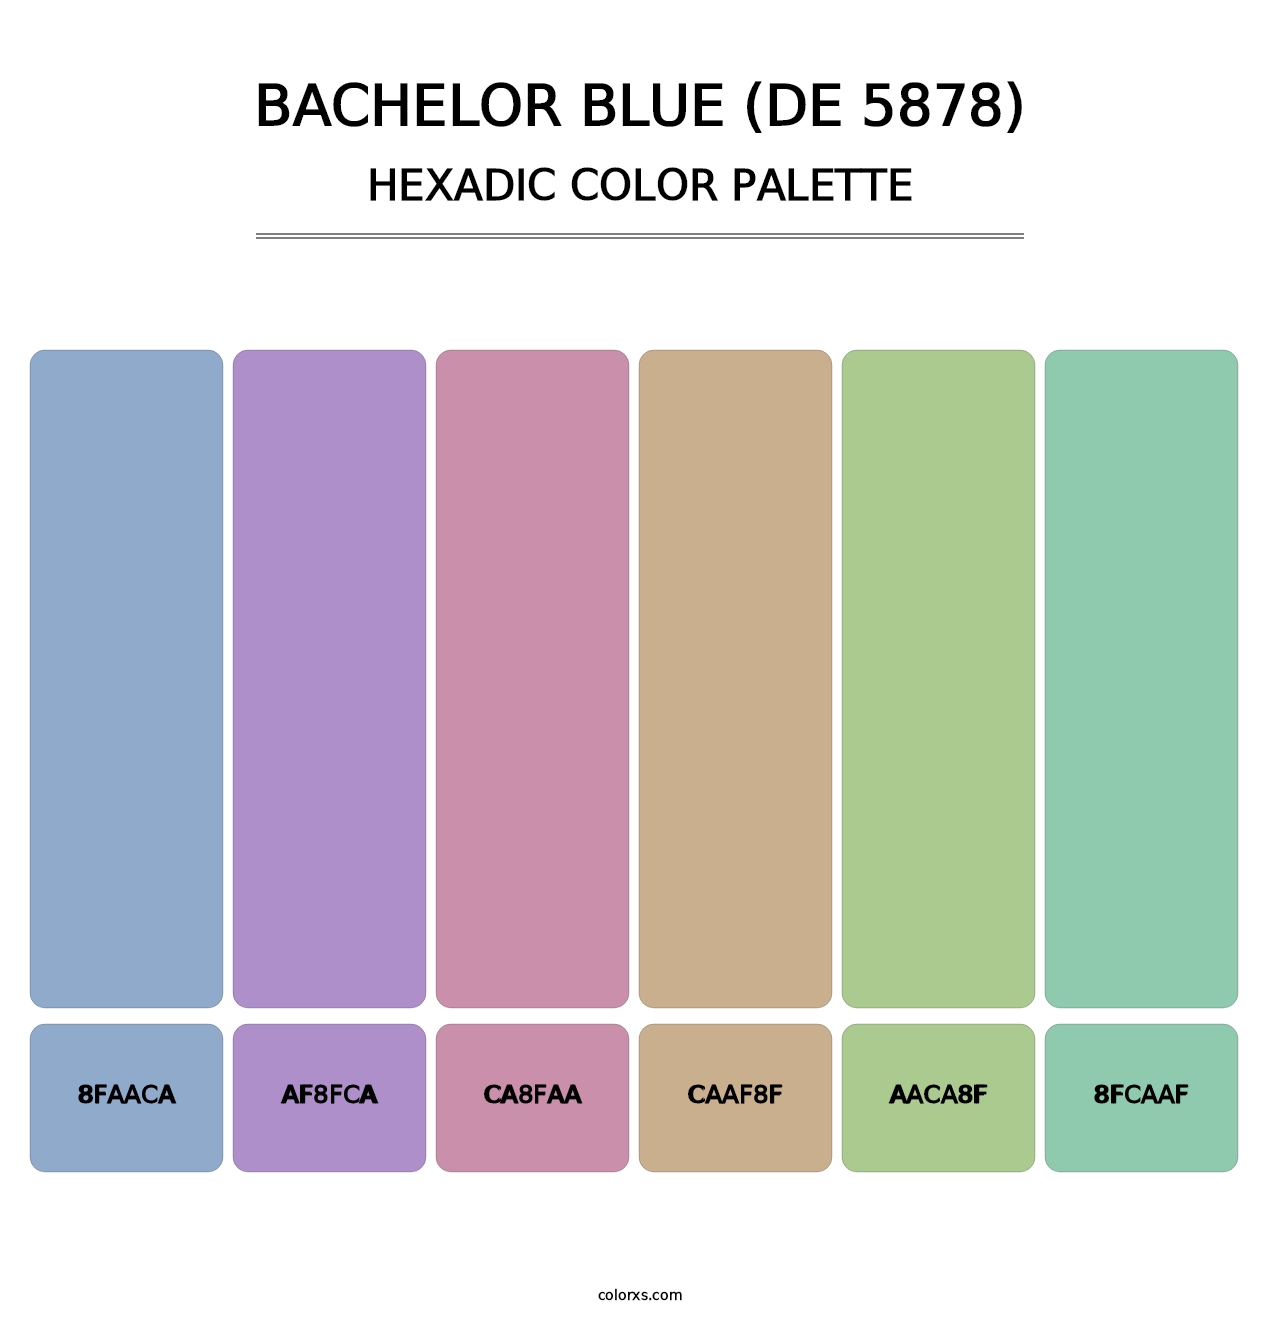 Bachelor Blue (DE 5878) - Hexadic Color Palette